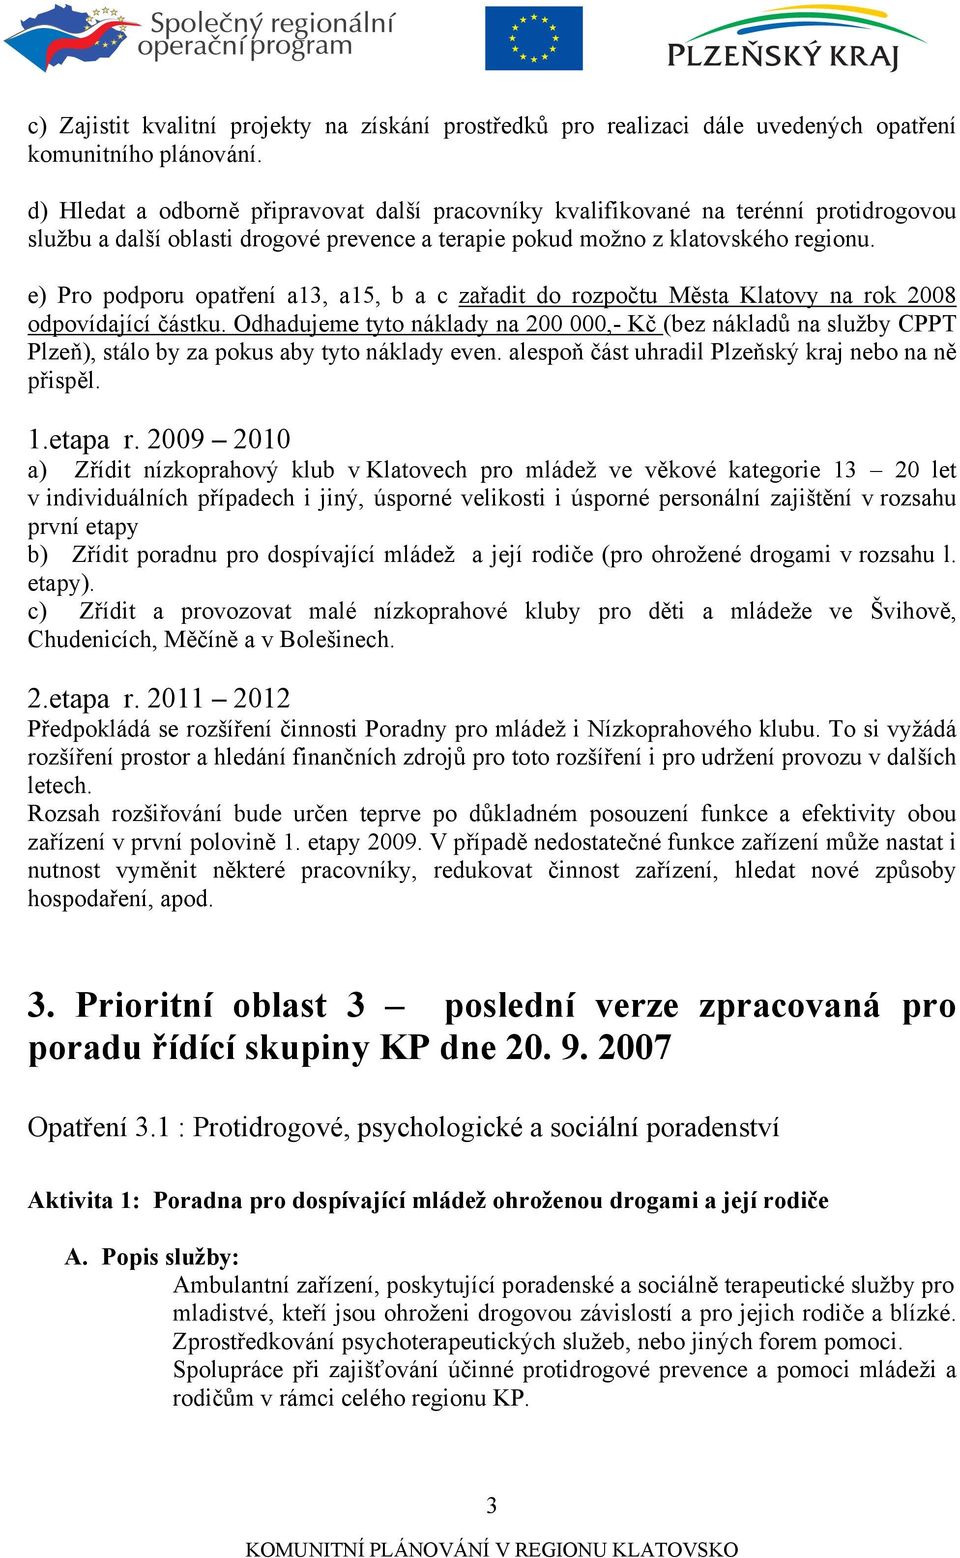 e) Pro podporu opatření a13, a15, b a c zařadit do rozpočtu Města Klatovy na rok 2008 odpovídající částku.